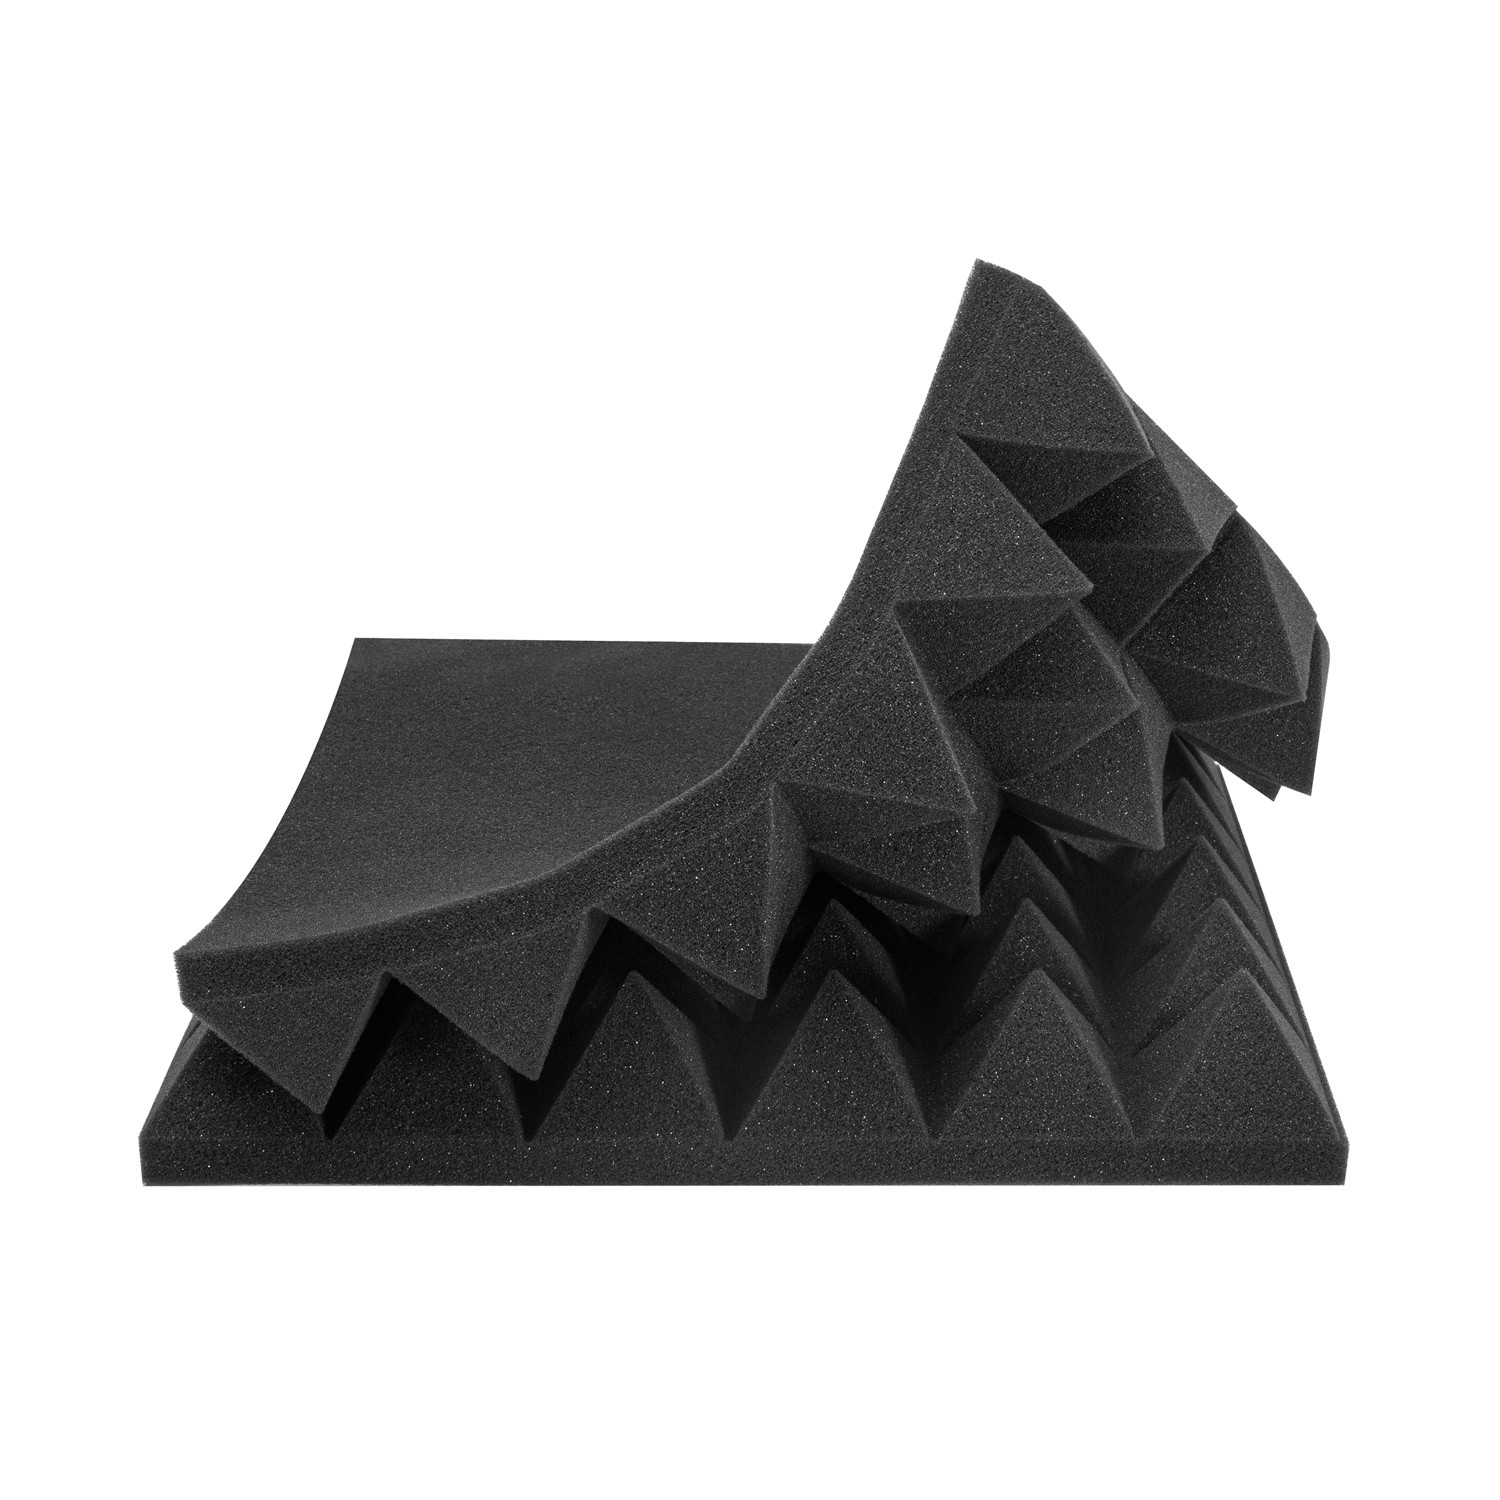 Acoustic Foam Panels 24 Pack 2 ”x12”x12” Sound Proof Padding Studio Foam Egg Crate 24 Square Feet 